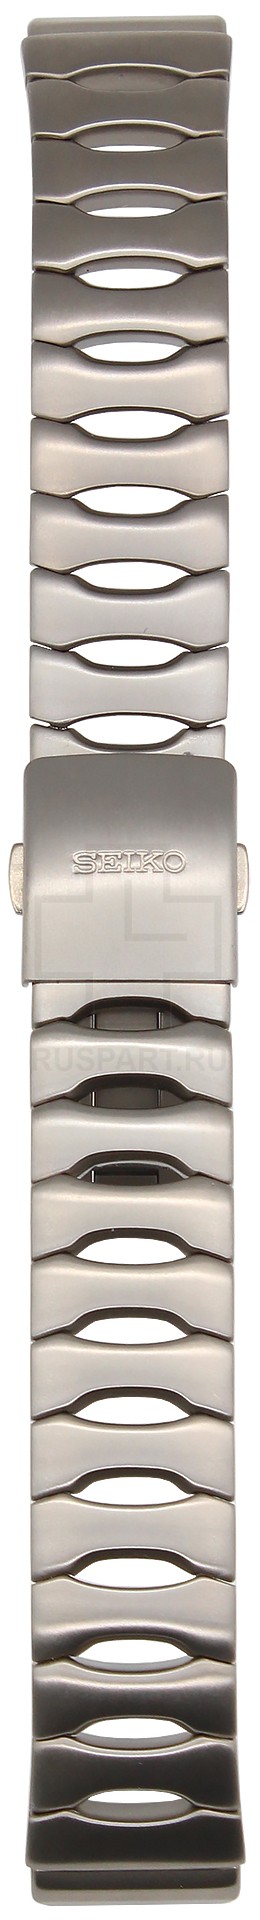 Браслет для часов Seiko SKH533P1 (цвет: Стальной, материал: Титан) - купить в интернет-магазине Watchband.ru.